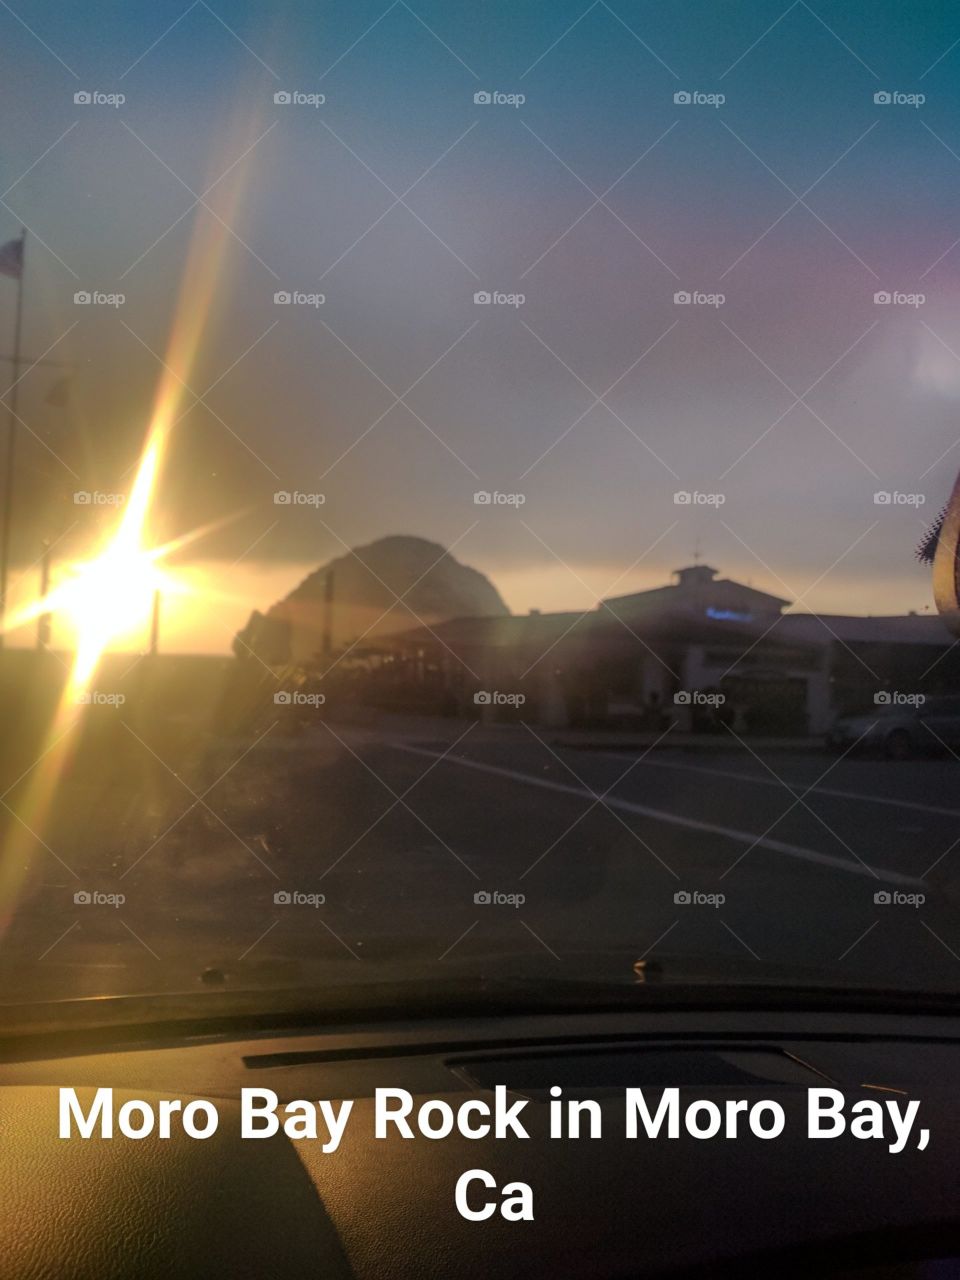 Sunset At Moro Bay Rock, California